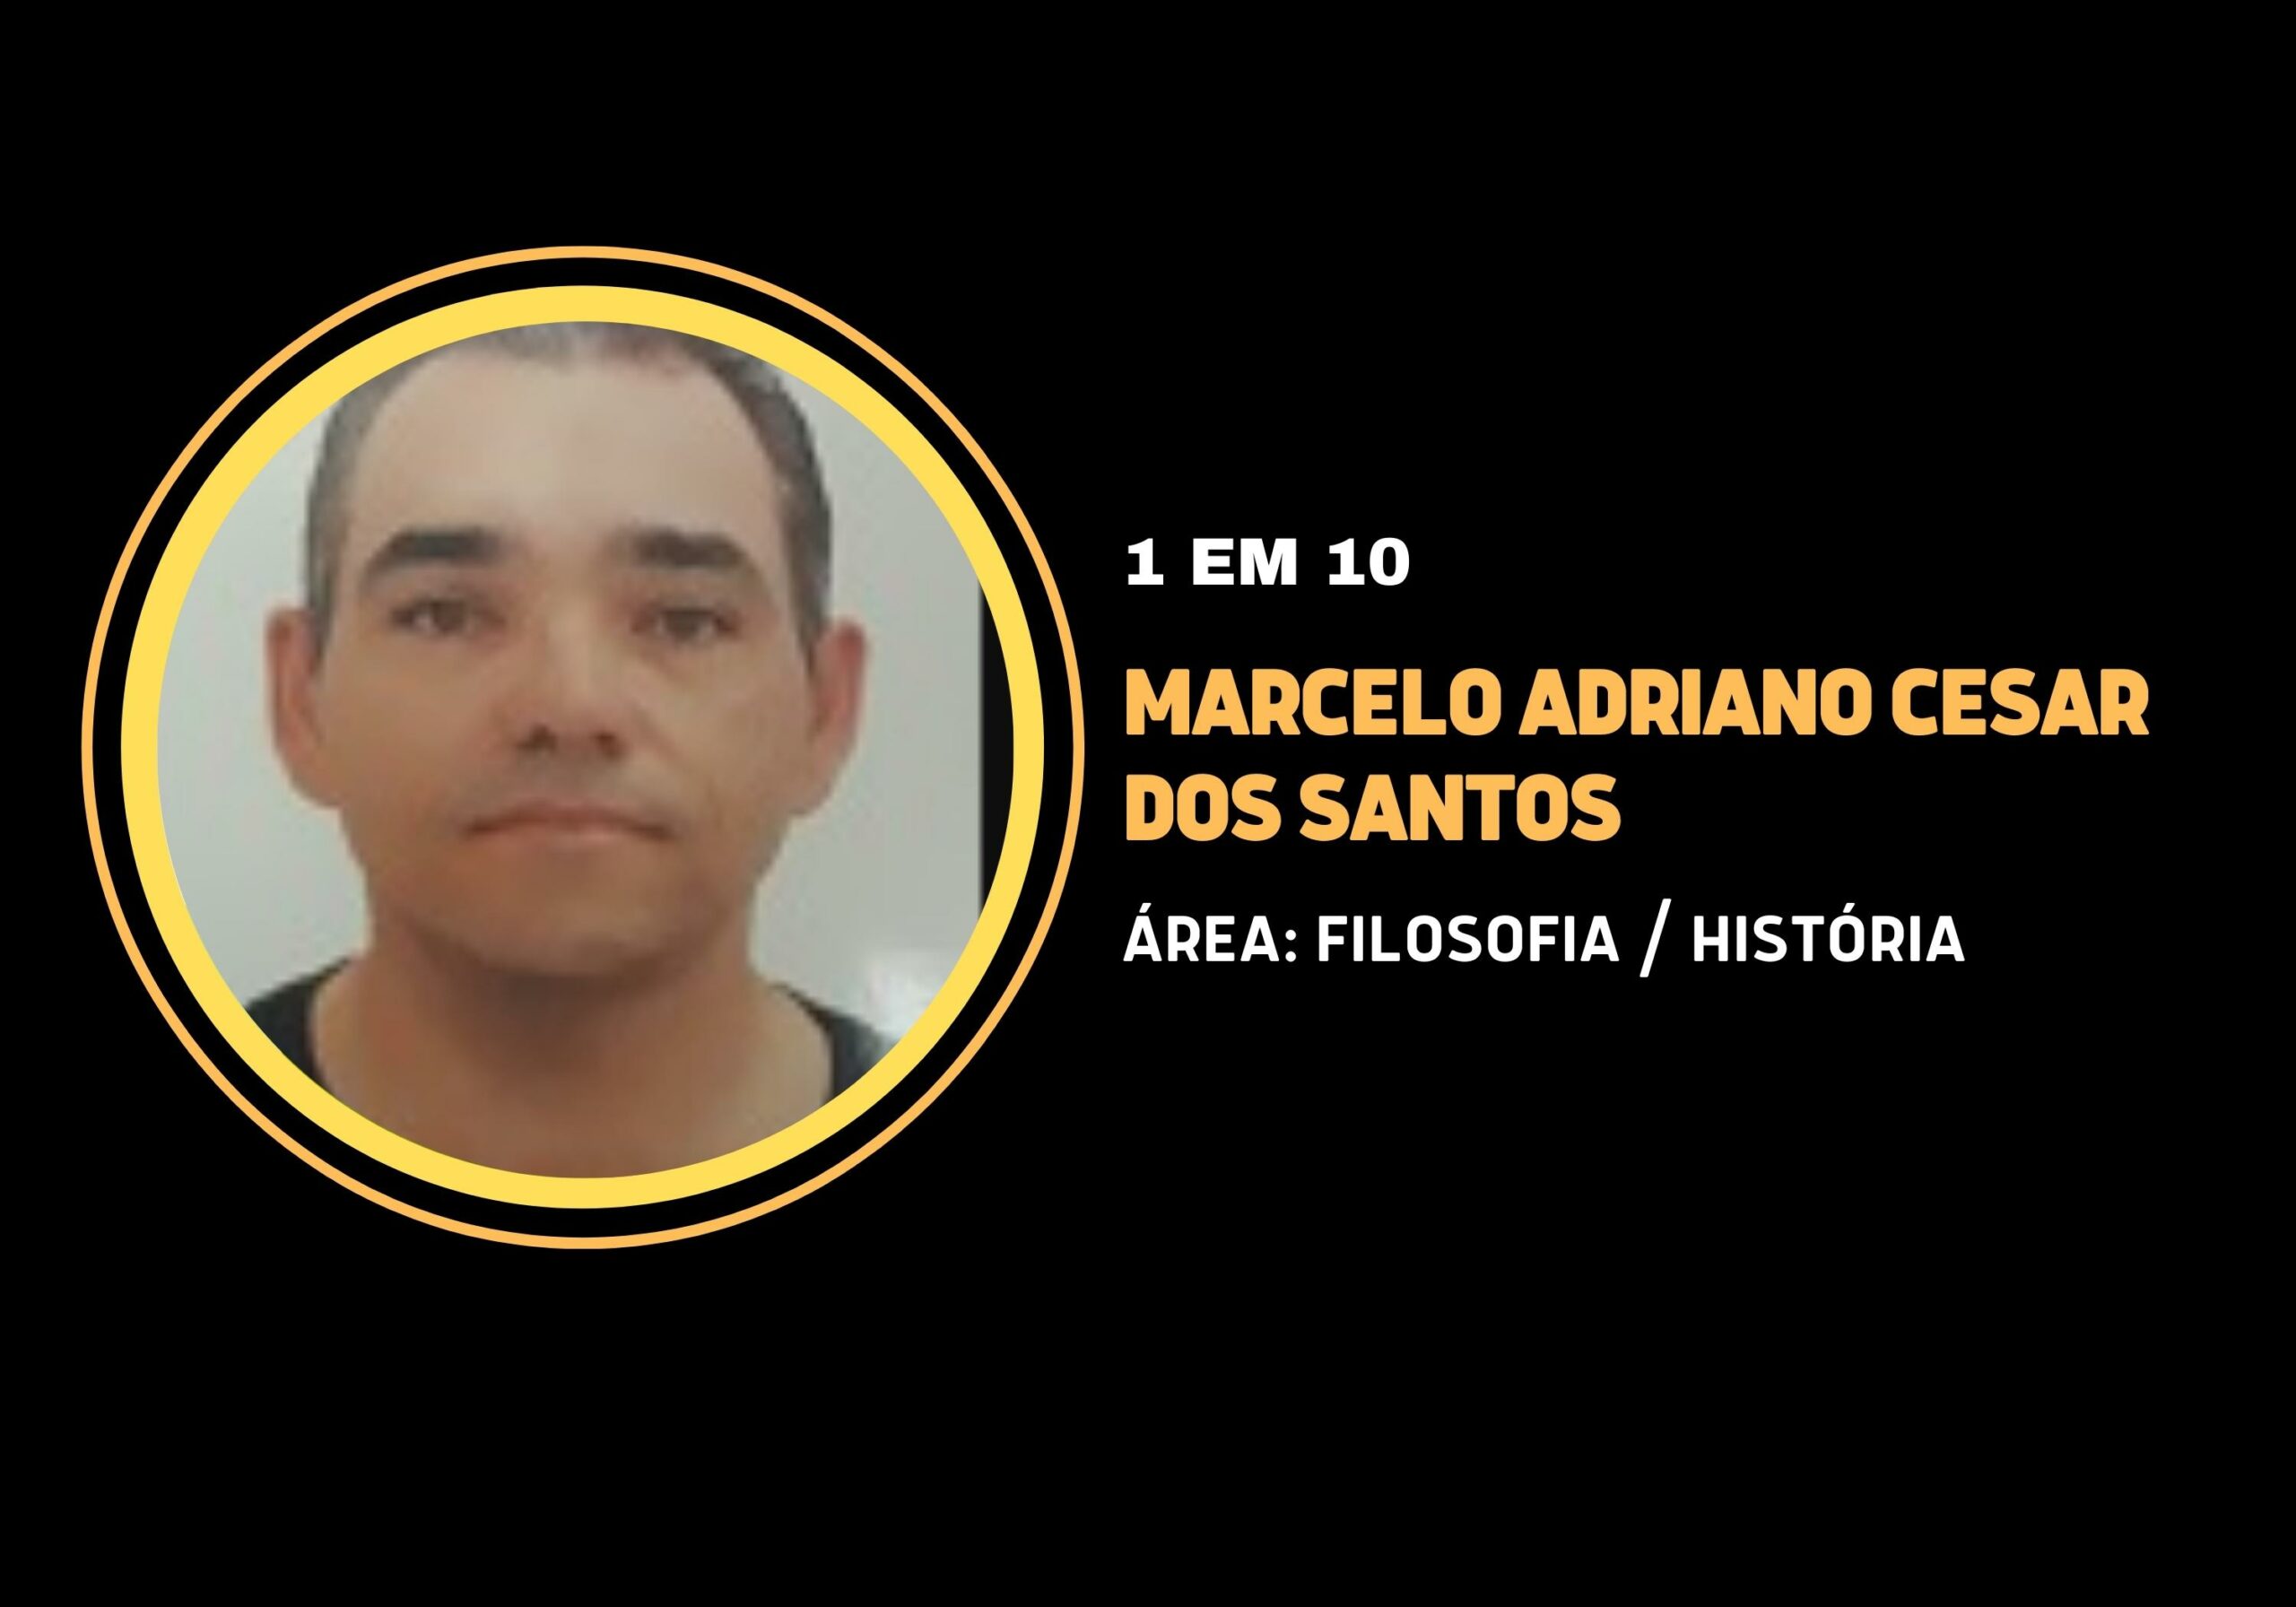 Marcelo Adriano Cesar dos Santos | 1 em 10